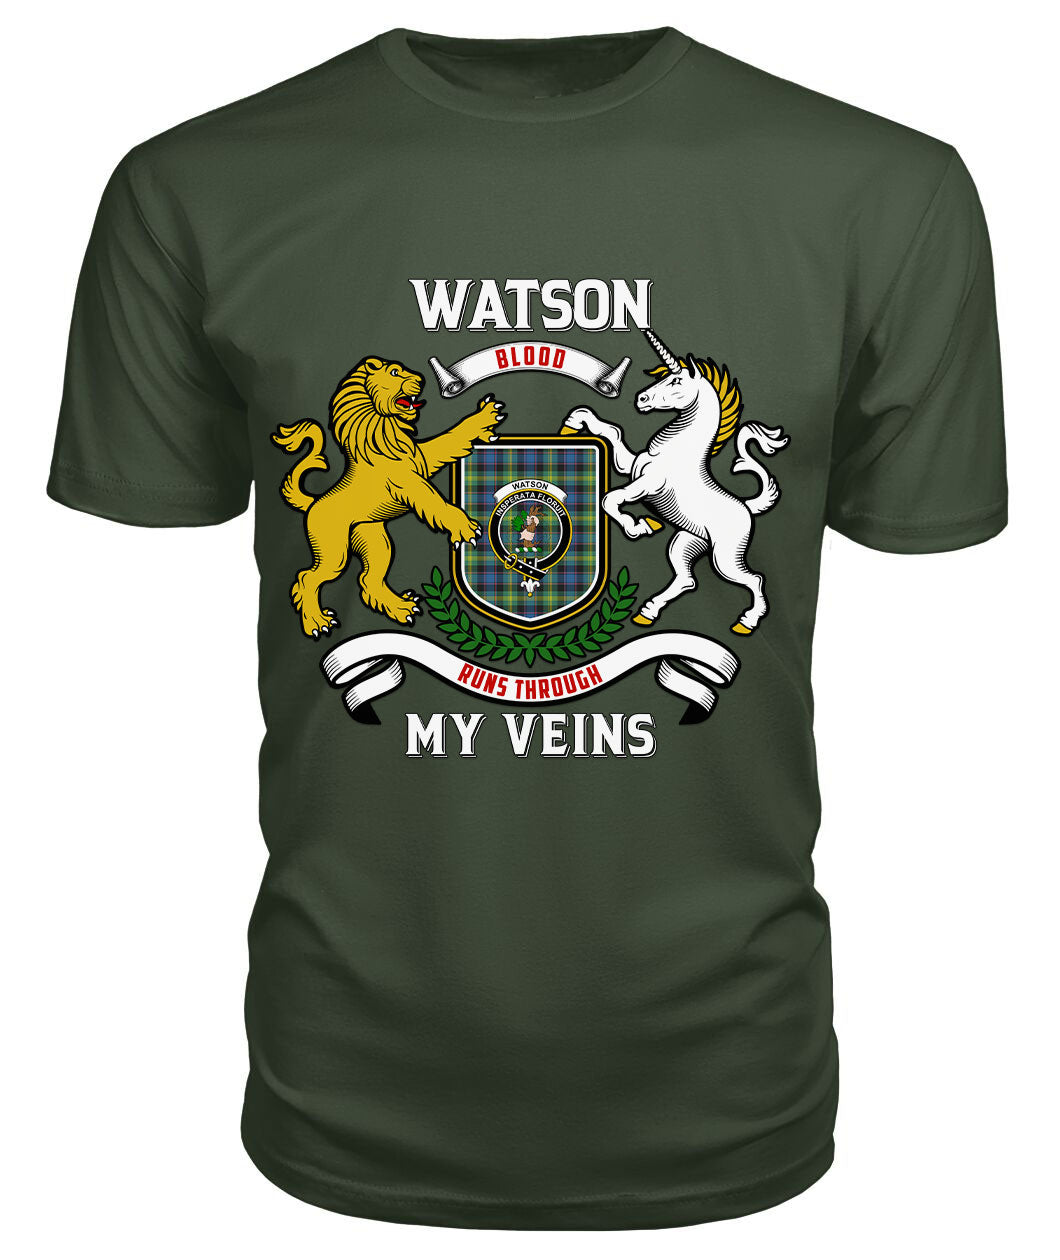 Watson Ancient Tartan Crest 2D T-shirt - Blood Runs Through My Veins Style